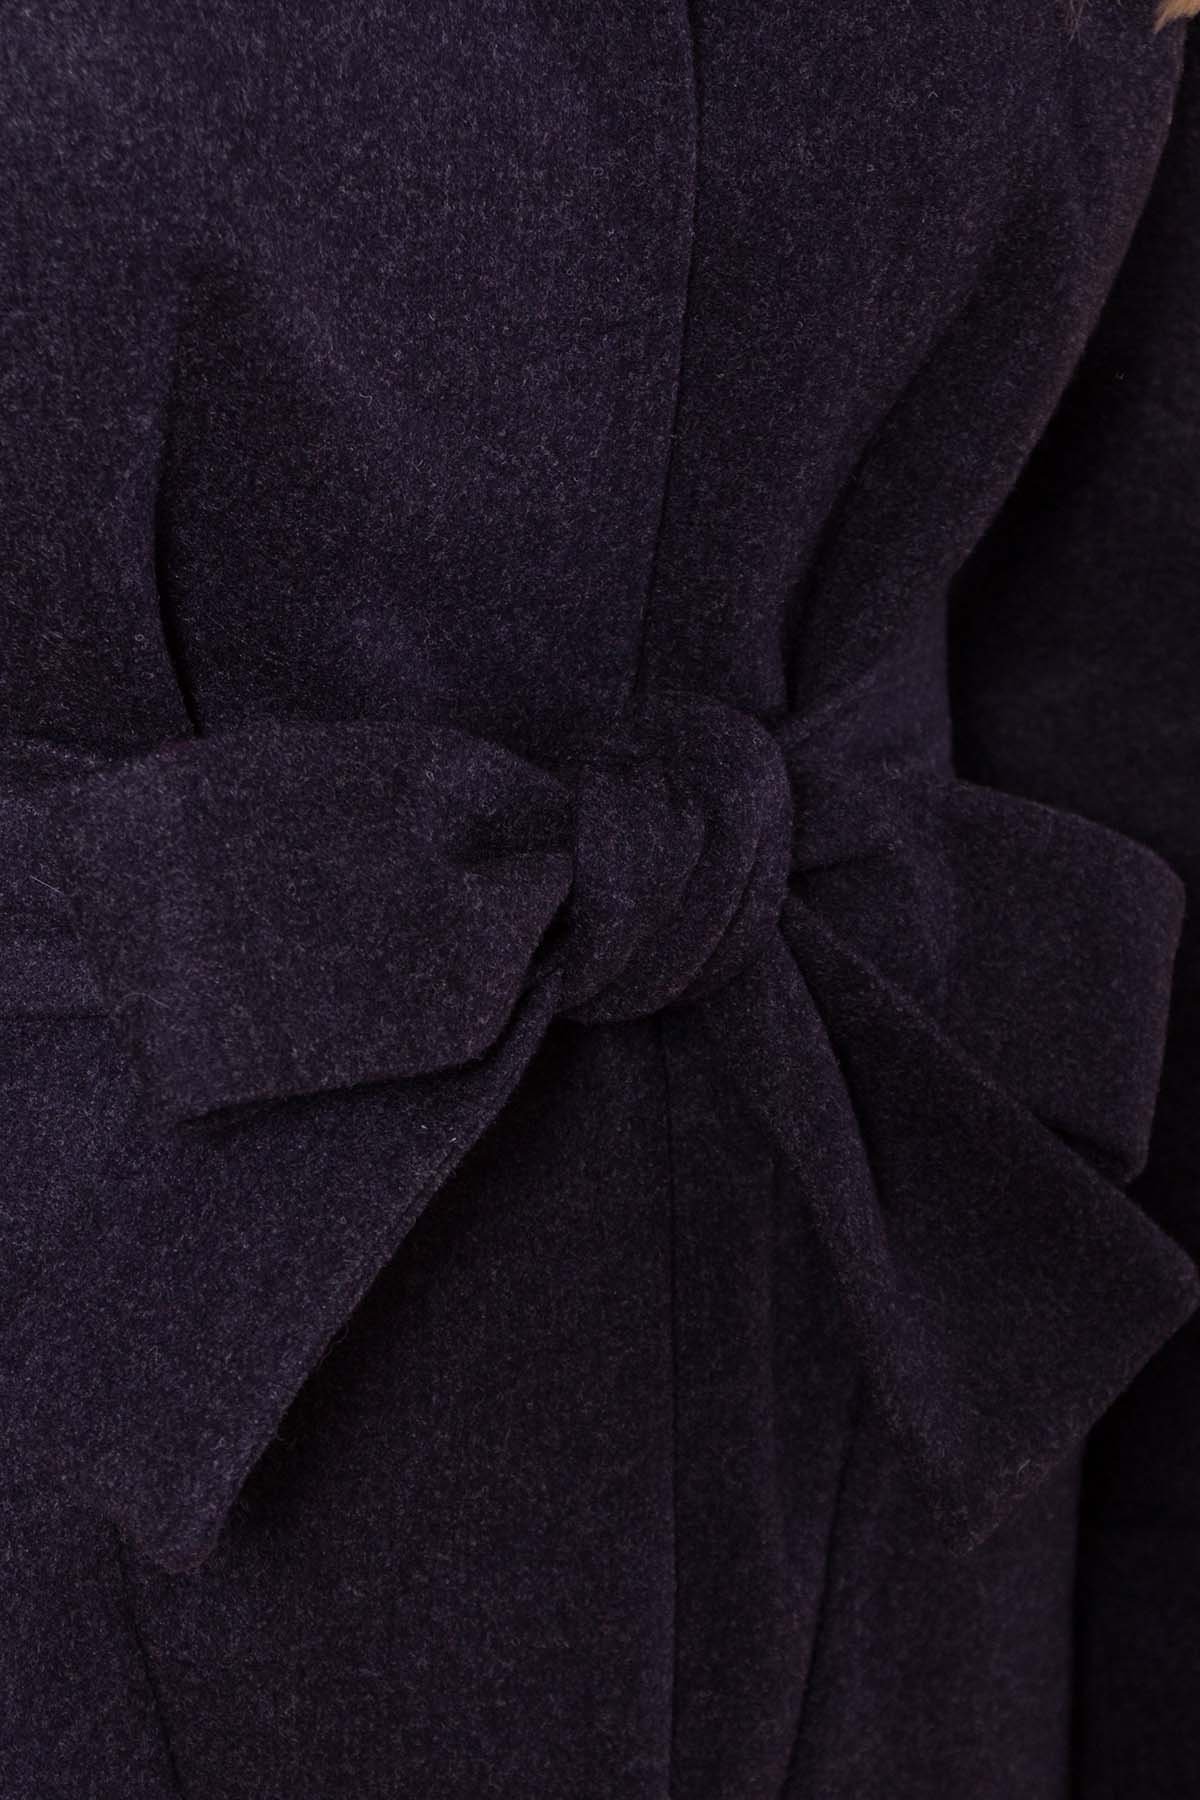 Теплое зимнее пальто Анита 4122 АРТ. 20215 Цвет: Темно-синий - фото 6, интернет магазин tm-modus.ru